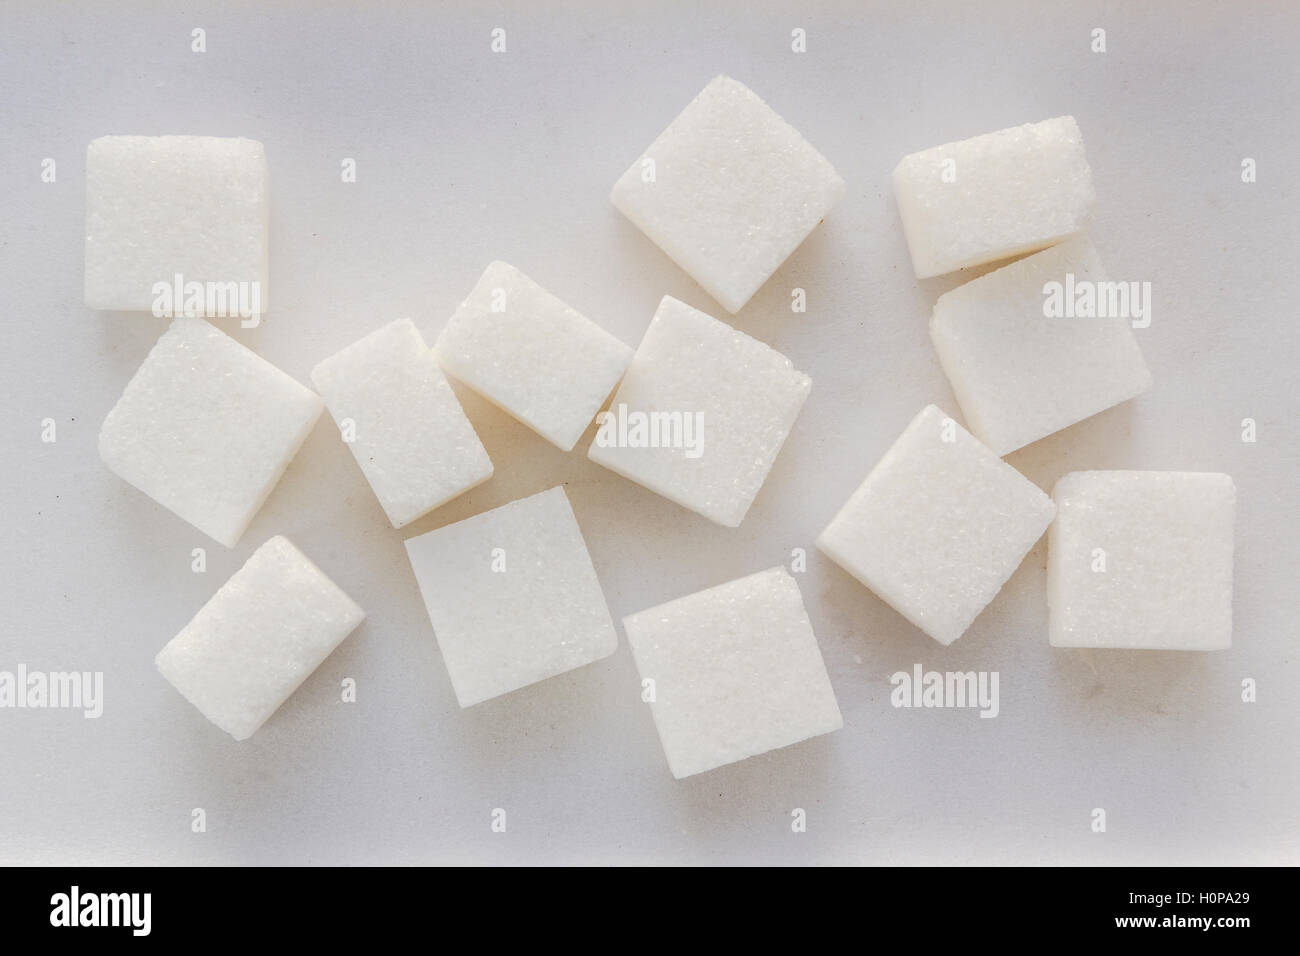 White sugar pieces on a white background. Stock Photo